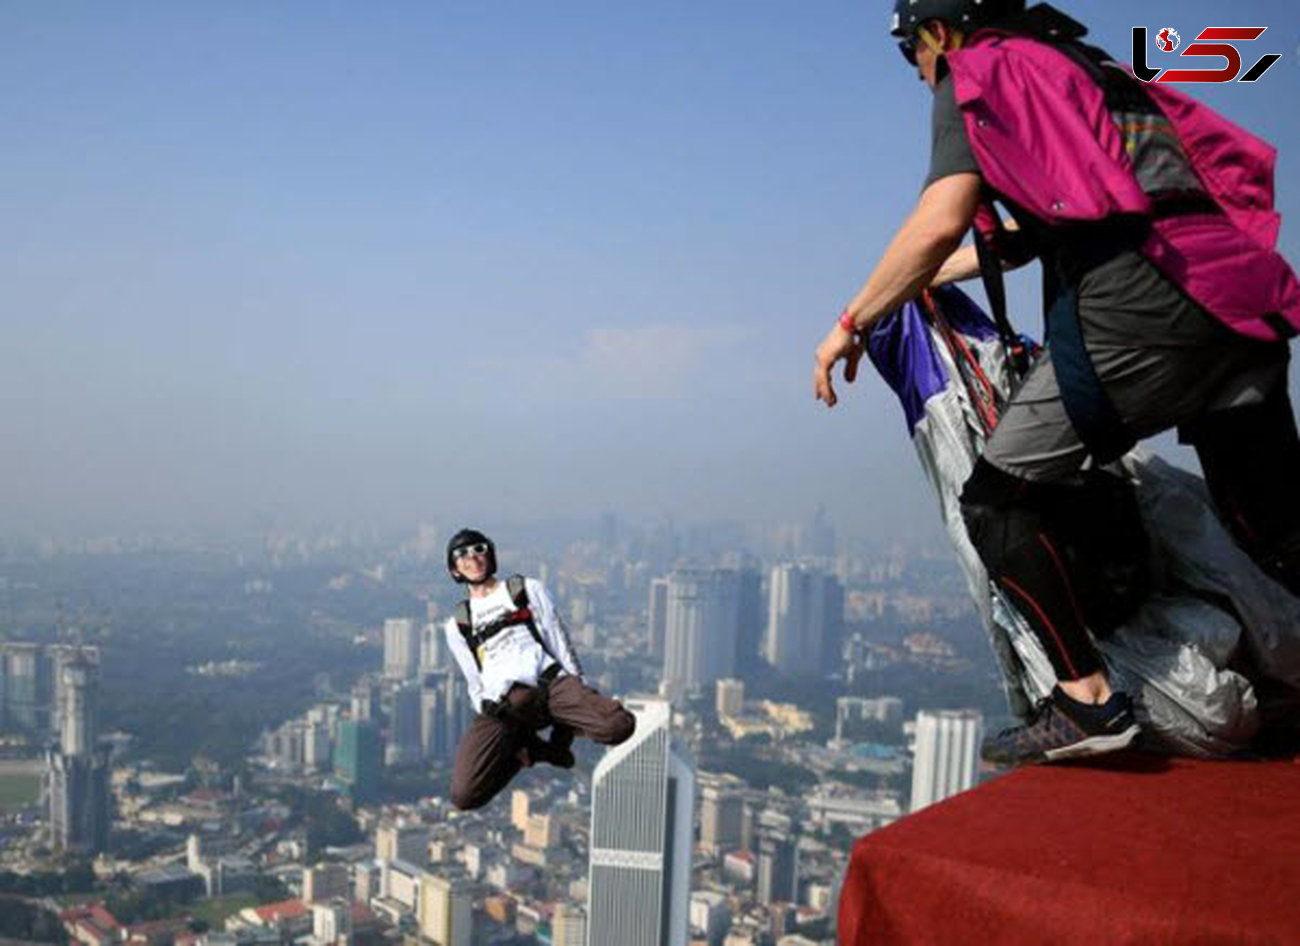 تصاویری از هیجان پرش از برج ۳۰۰ متری در مالزی + عکس 